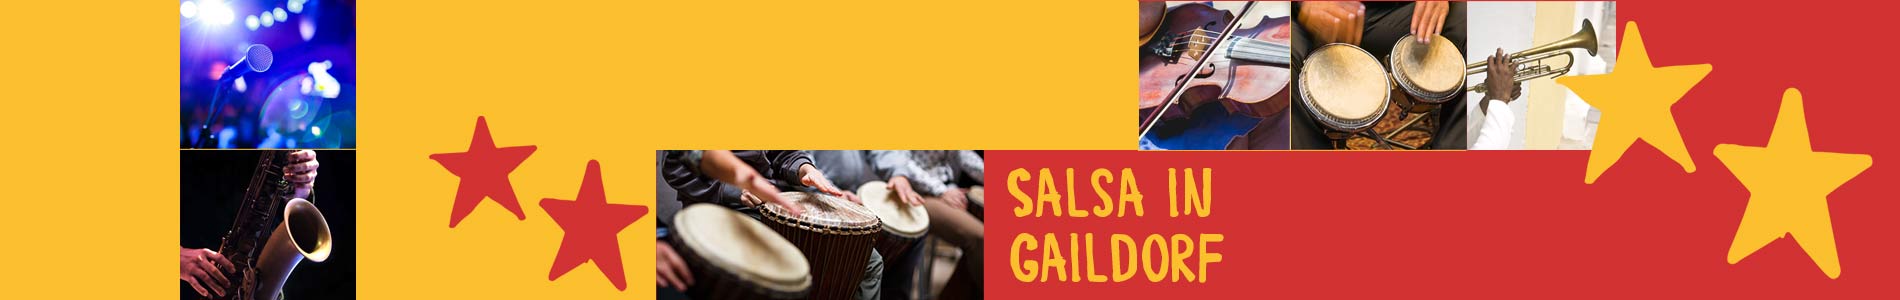 Salsa in Gaildorf – Salsa lernen und tanzen, Tanzkurse, Partys, Veranstaltungen